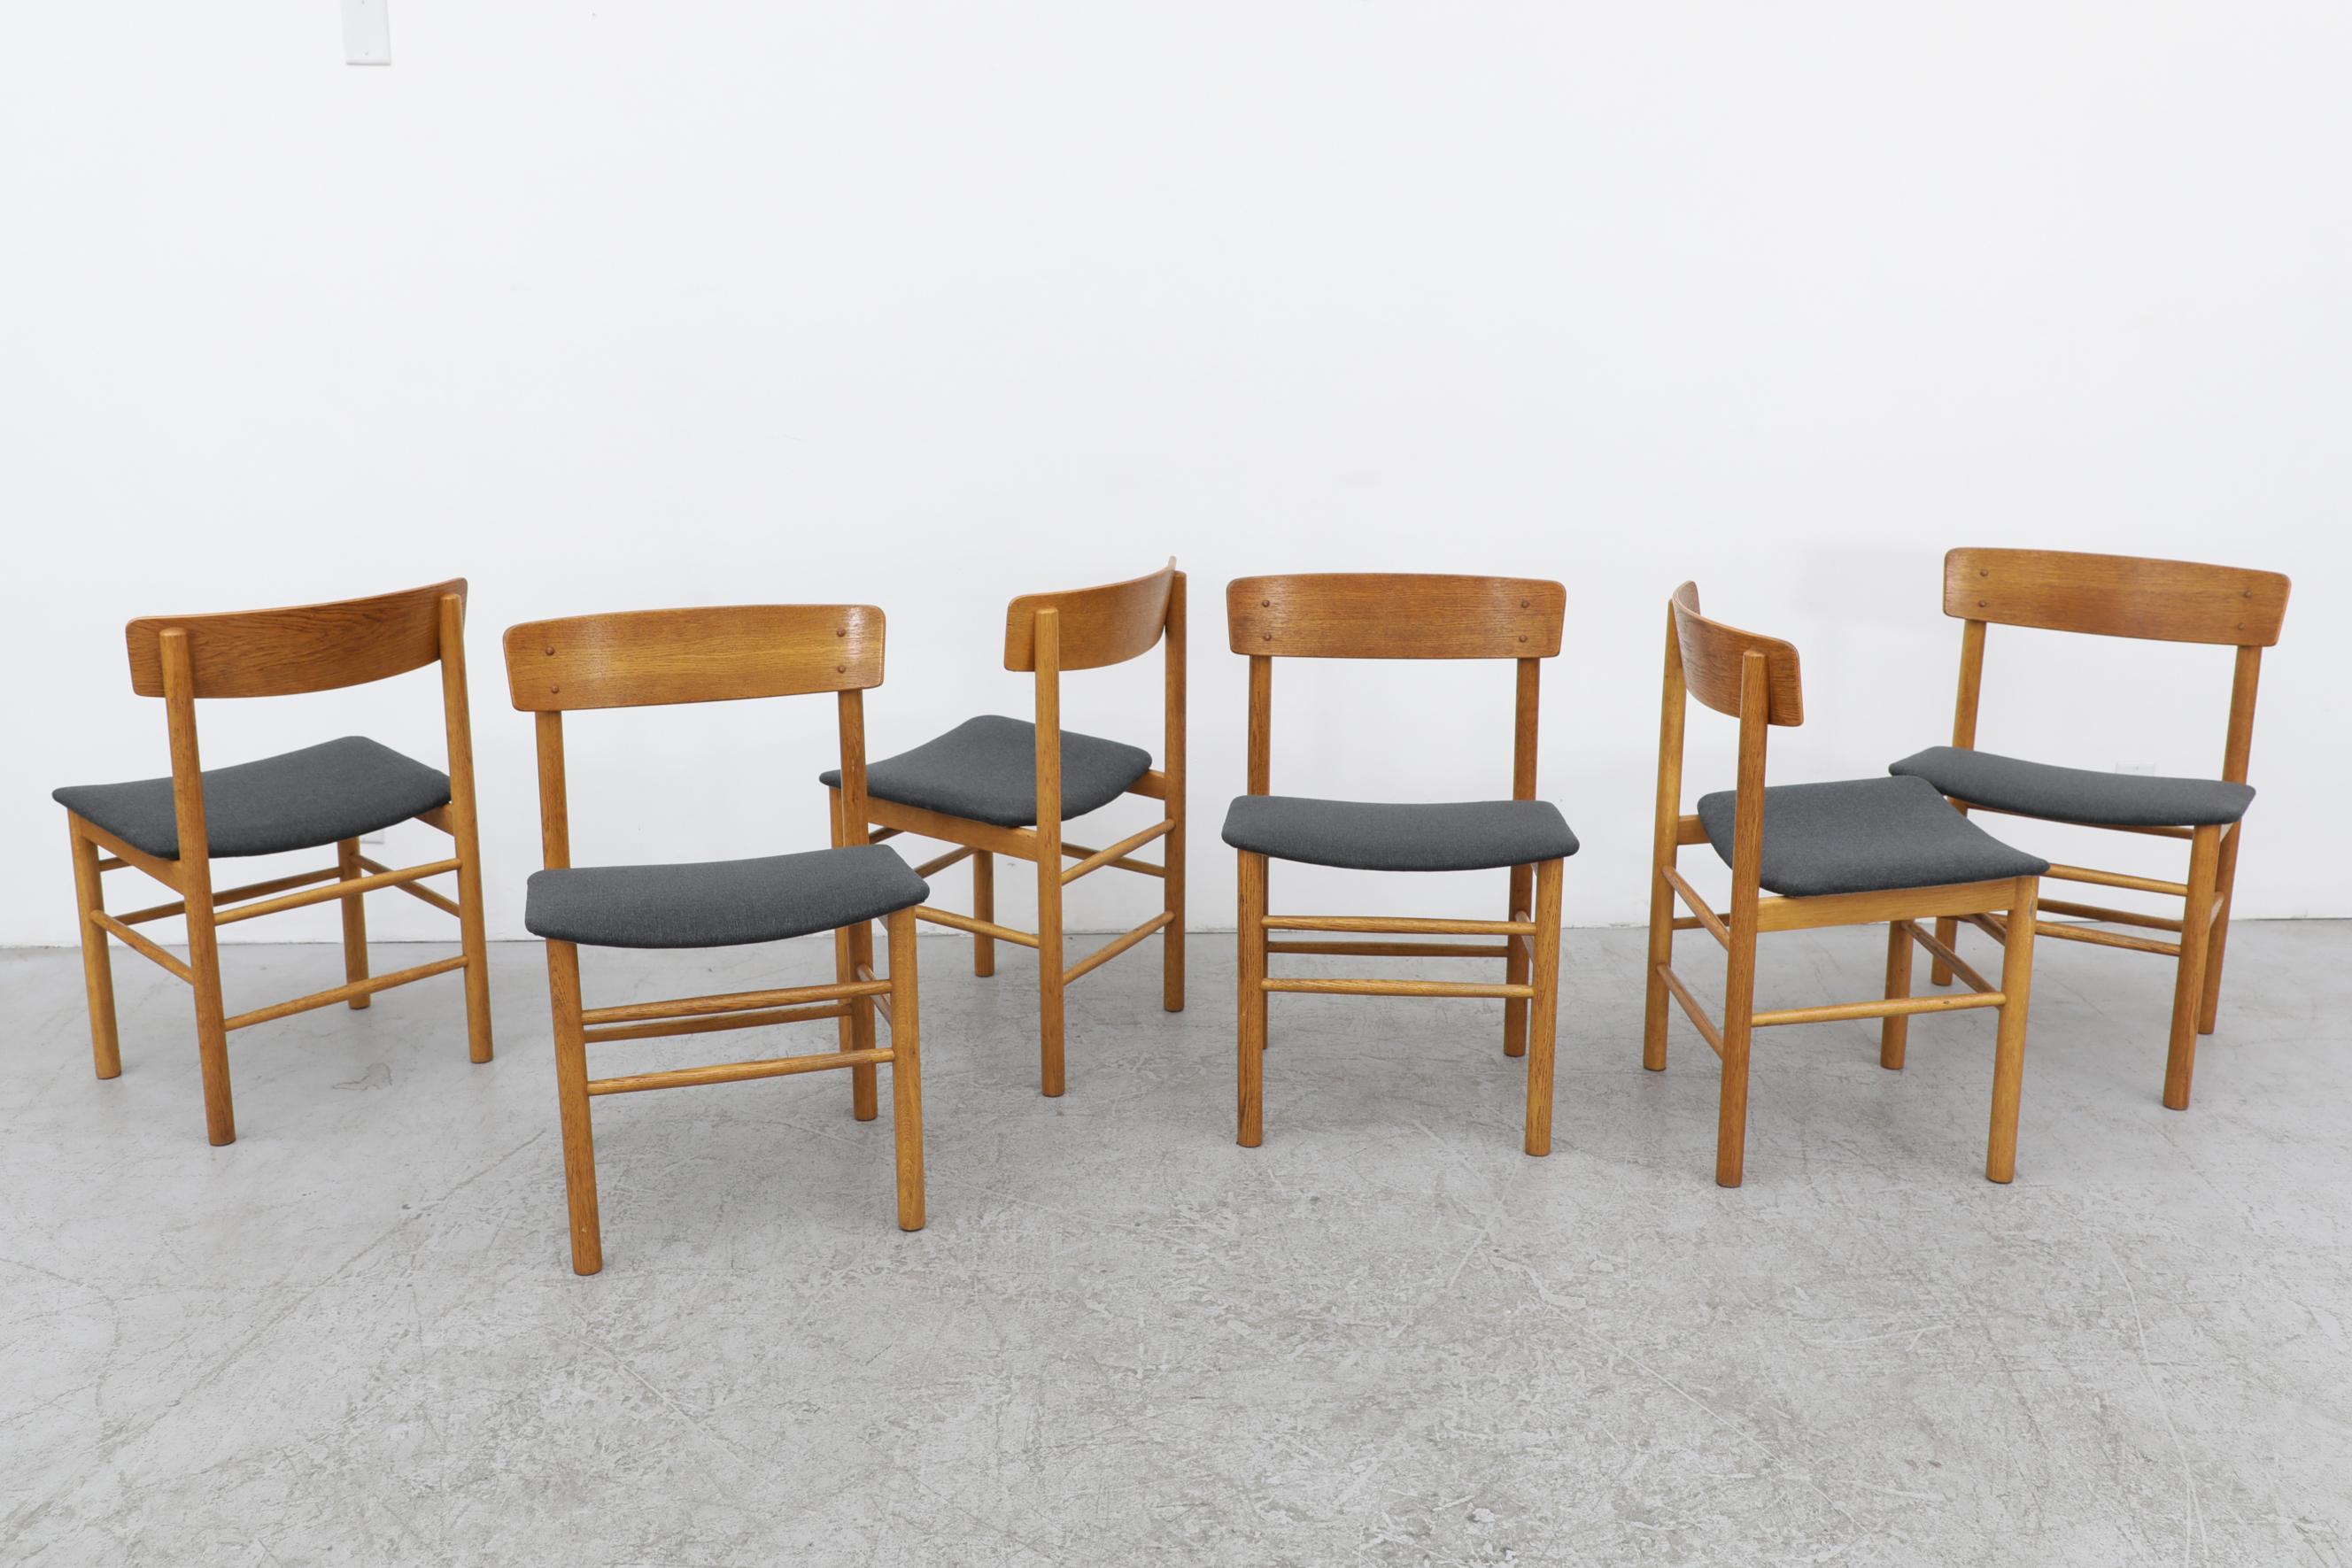 Ensemble de 6 chaises en chêne Børge Mogensen Modèle 3236. Mogensen est devenu chef du design à Fredericia en 1955 et l'une de ses premières réussites a été la chaise 3236, lancée en 1956. Robuste mais élégamment construite, la chaise met en